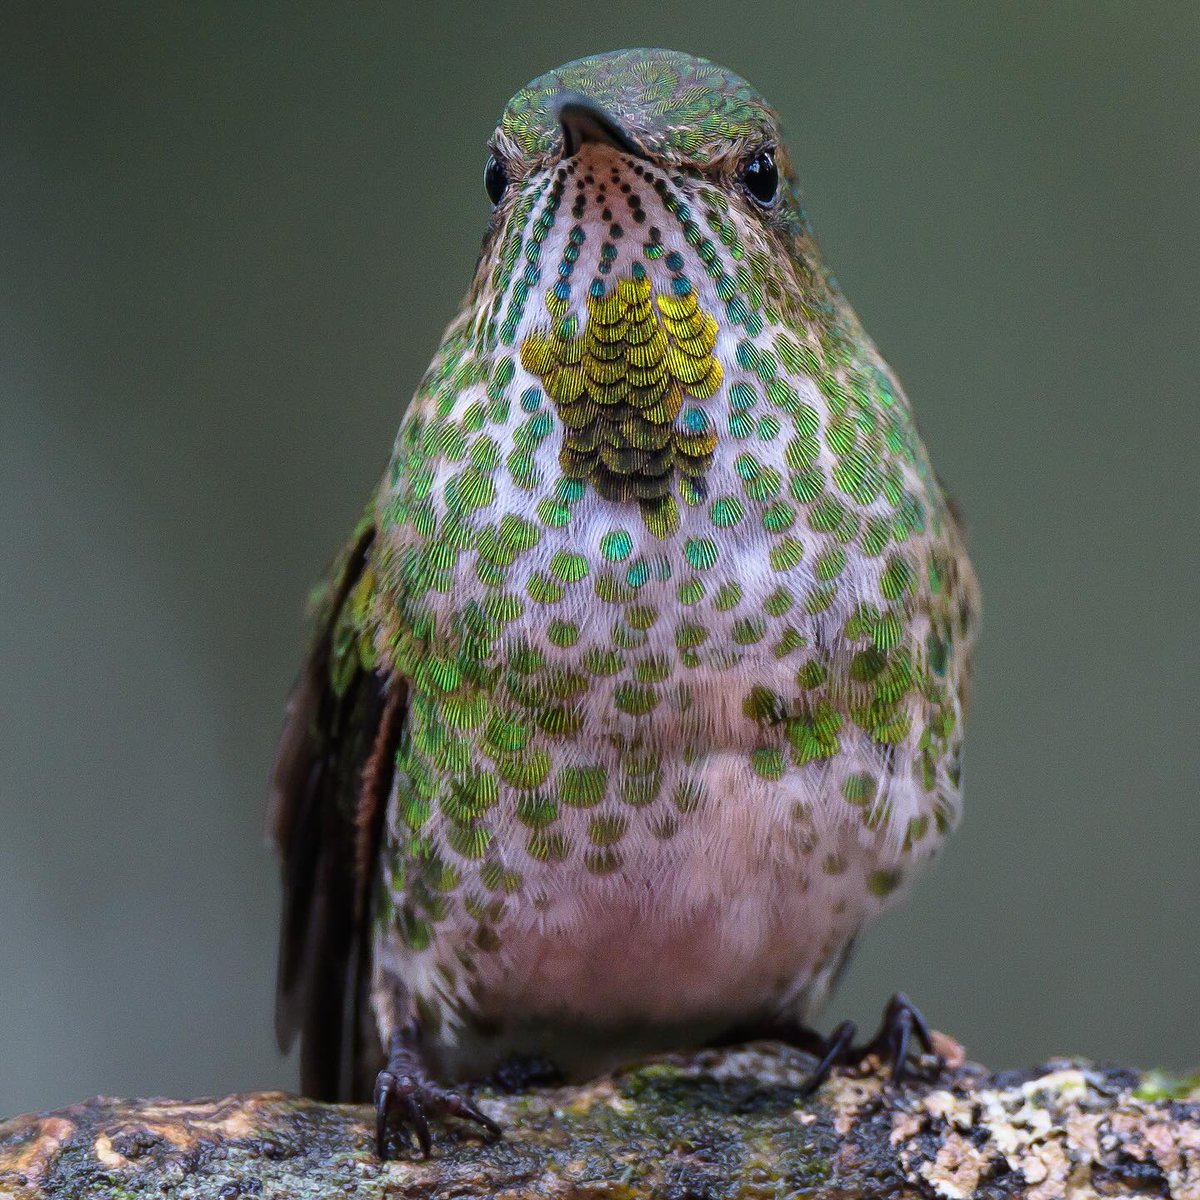 De donde viene el color de las aves ? 
De los pigmentos: 
1. Carotenoides
2. Melanina 
3. Porfirinas

Las plumas en los colibríes también pueden tener estos pigmentos pero en ellos es la luz que entra a jugar en cómo percibimos sus colores (iridescence.